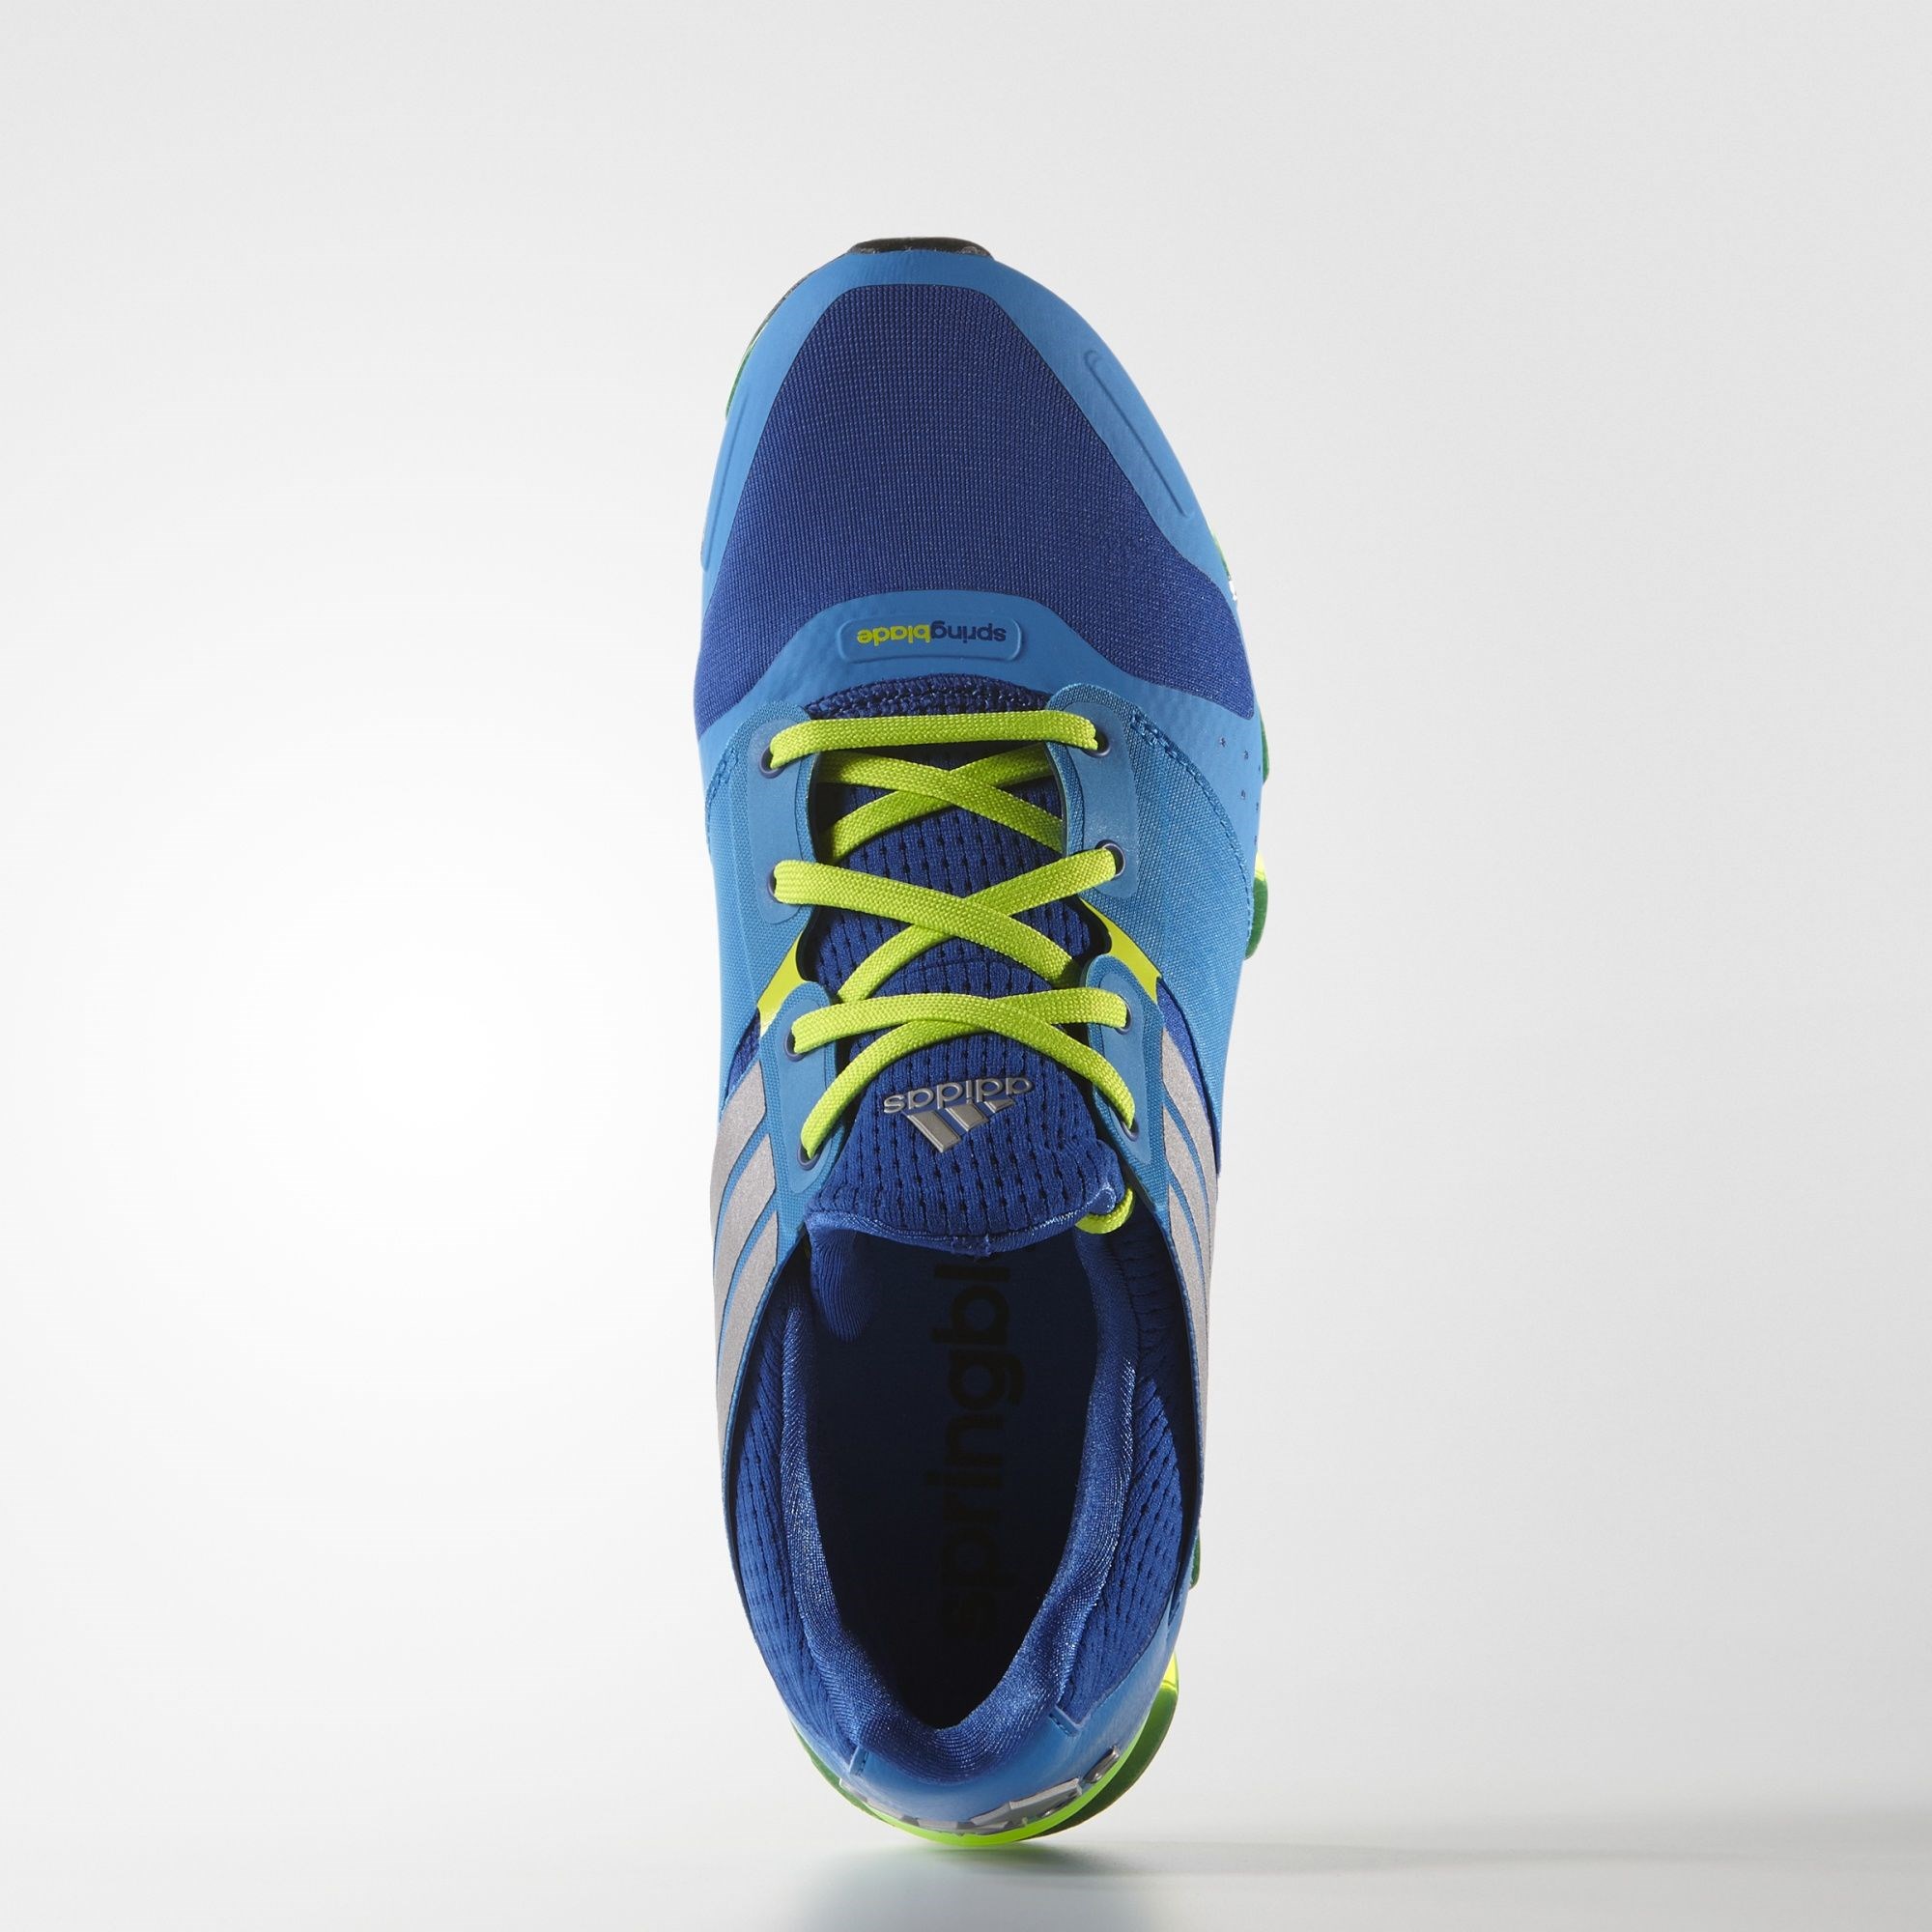 adidas Springblade Solyce Erkek Koşu Ayakkabısı Ürün kodu: AQ5242 | Etichet  Sport